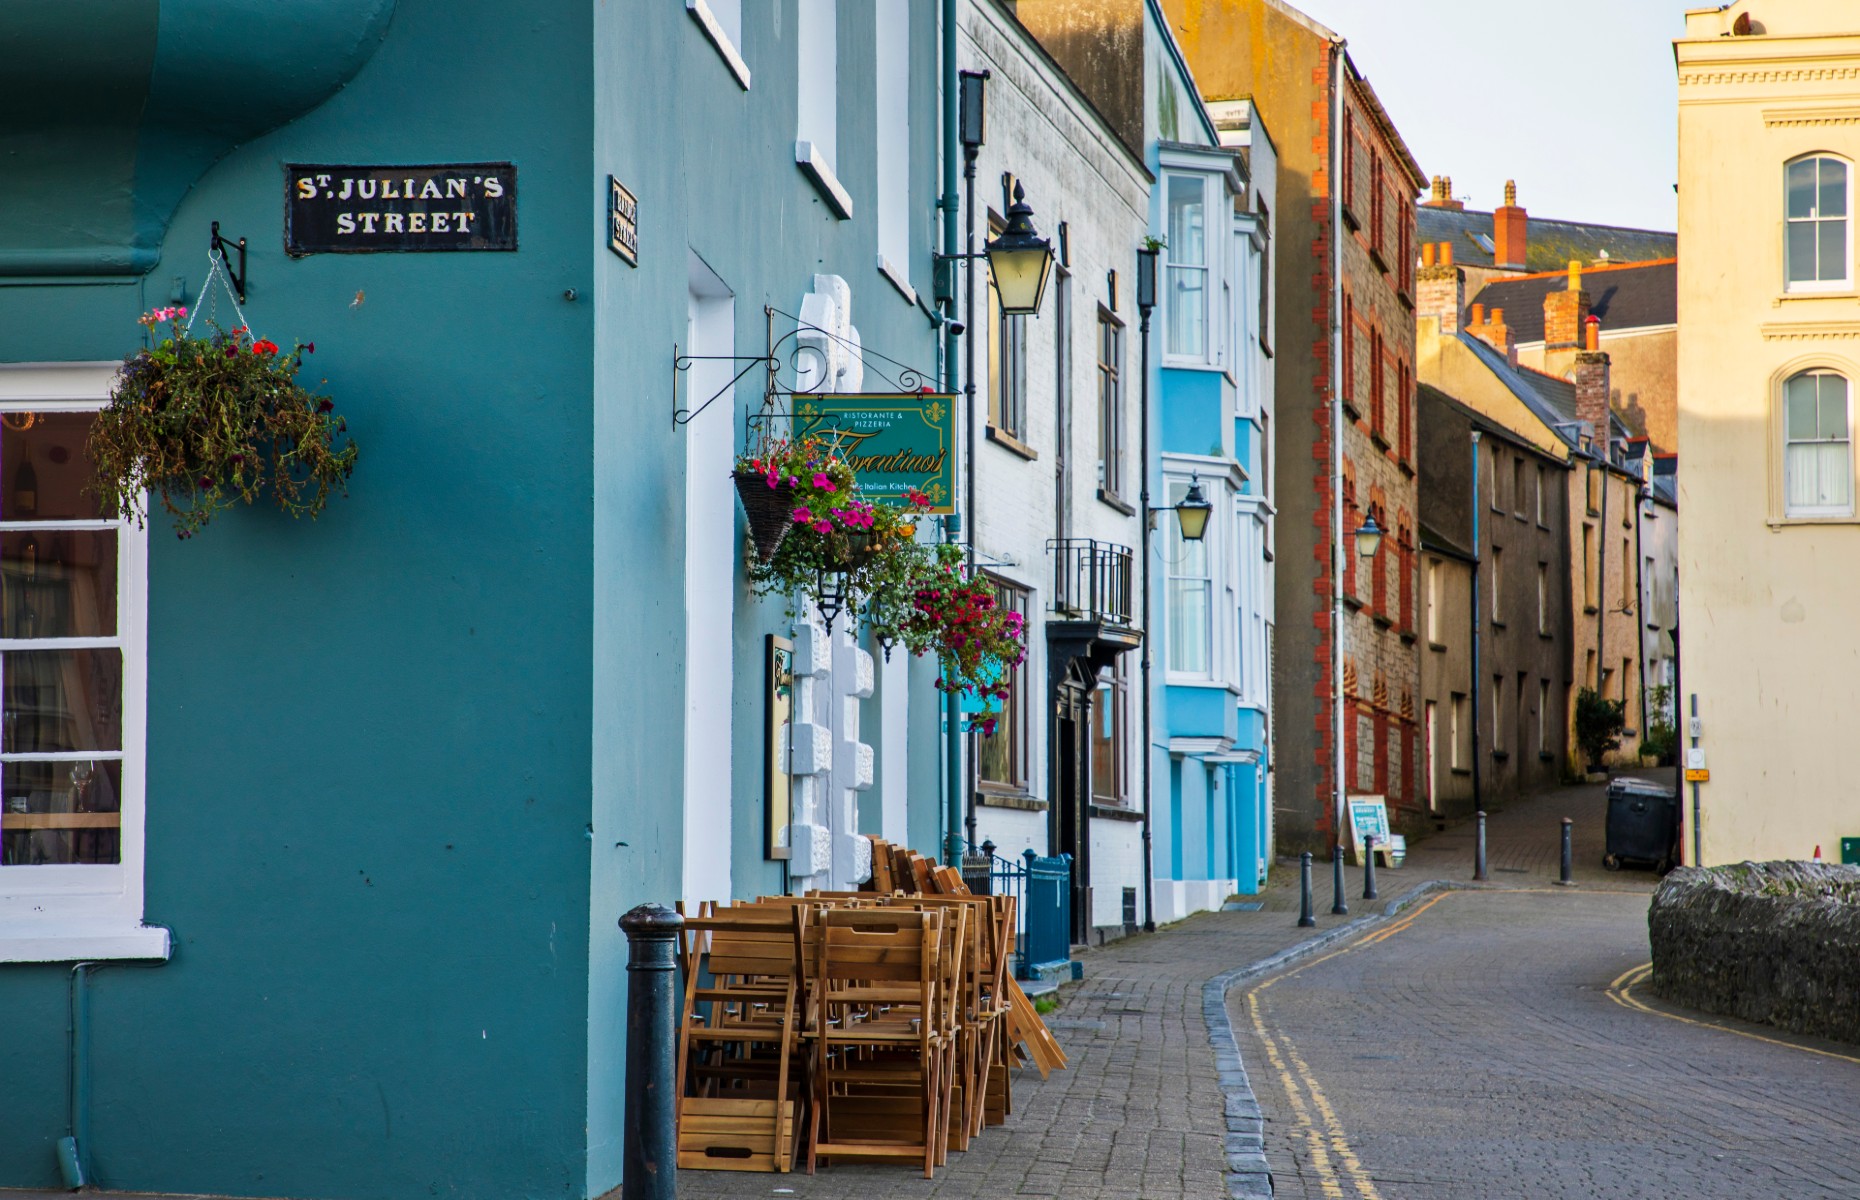 St Julian's Street (Image: Magdanatka/Shutterstock)